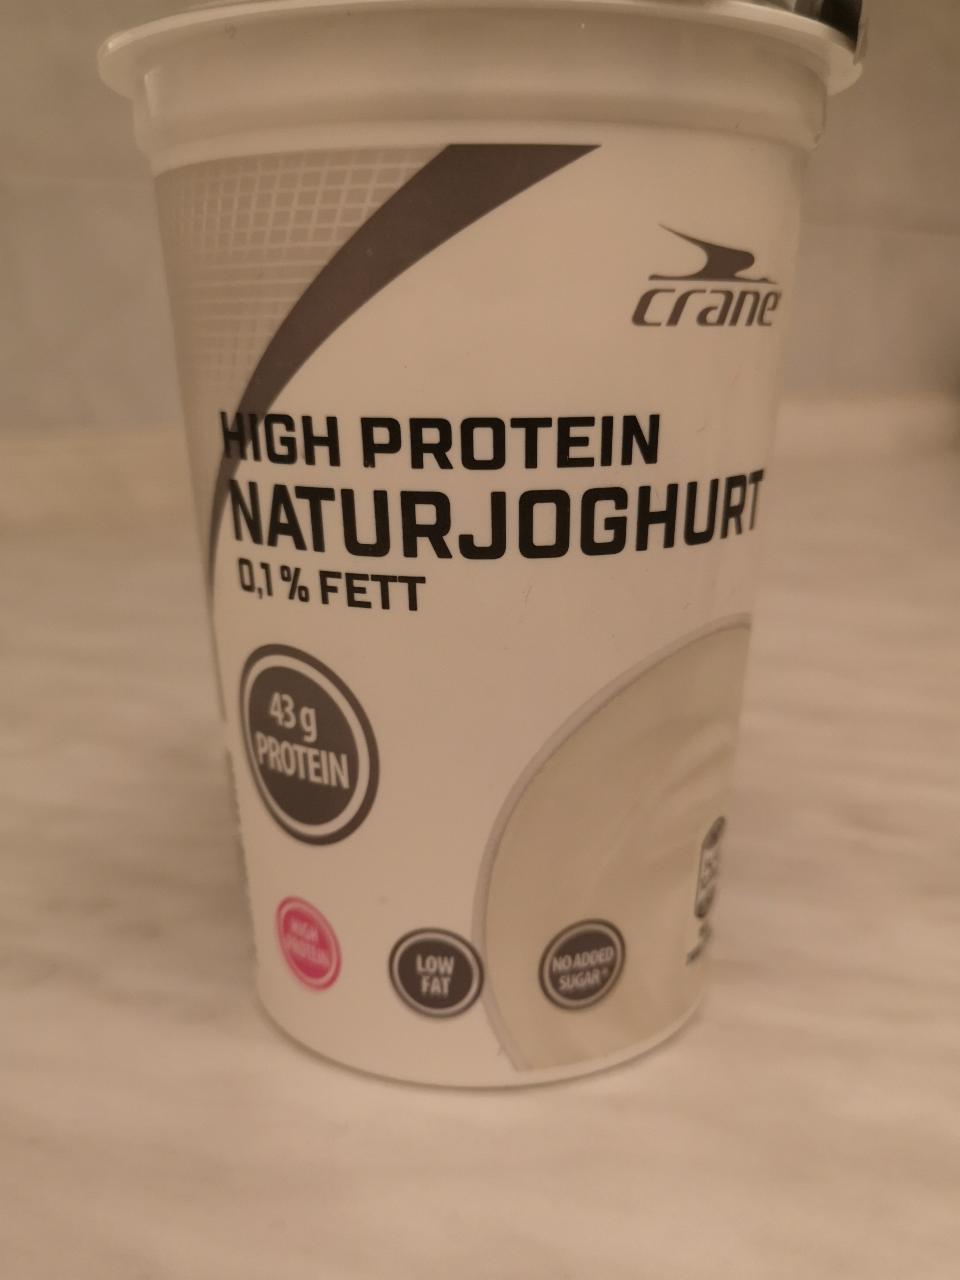 Fotografie - High Protein NaturJoghurt 0.1% fett Crane